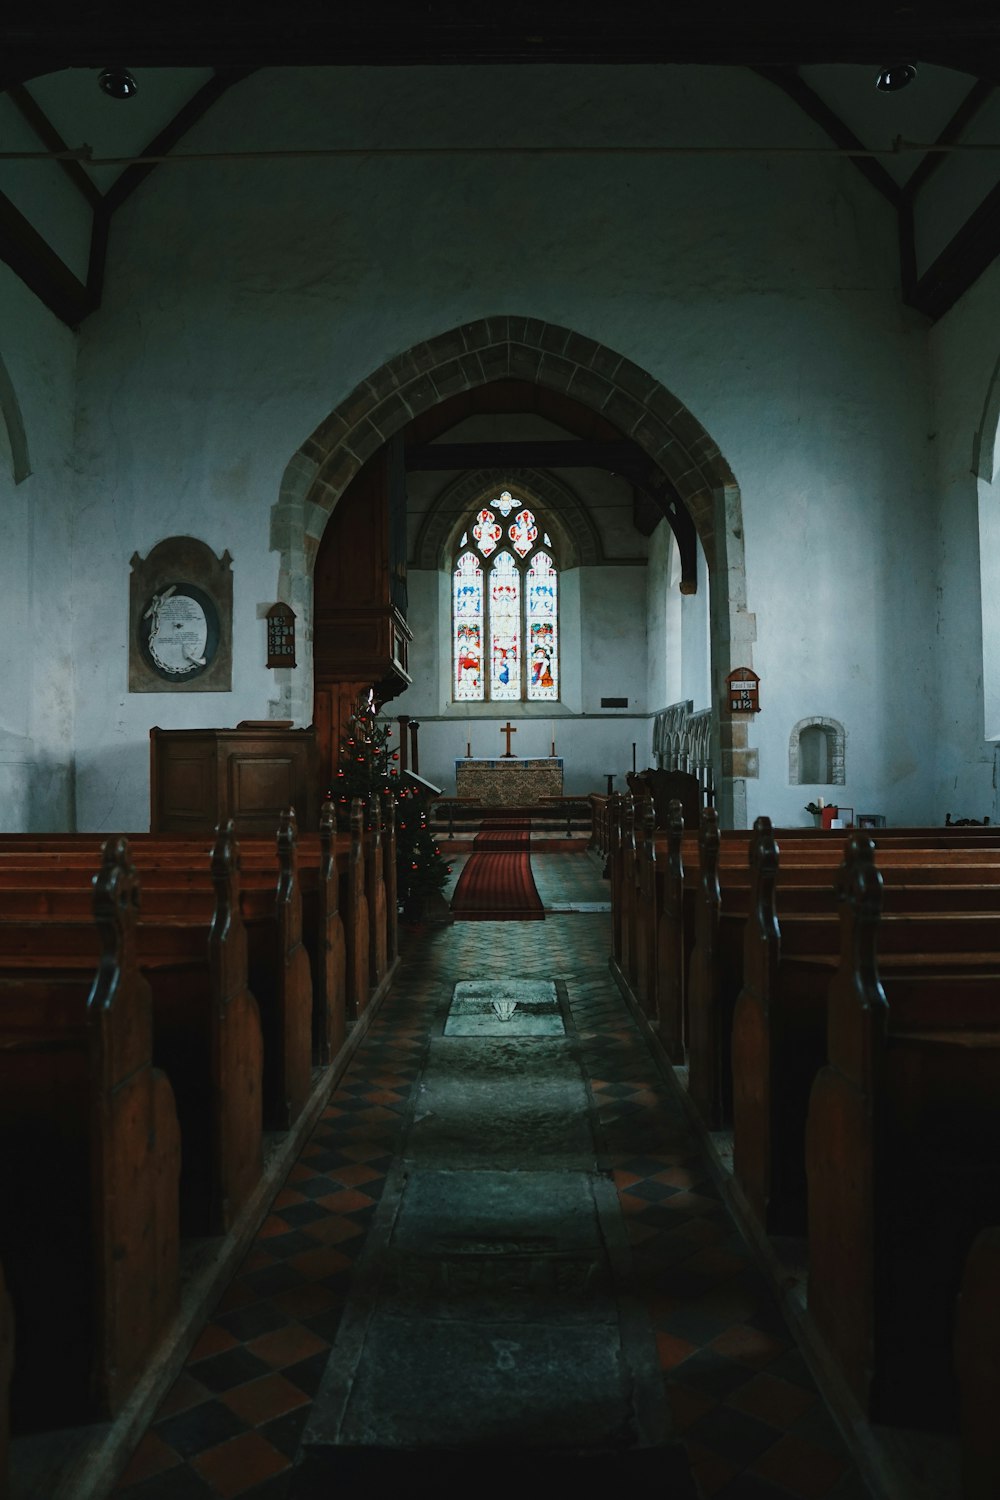 sedie di legno marrone all'interno della chiesa